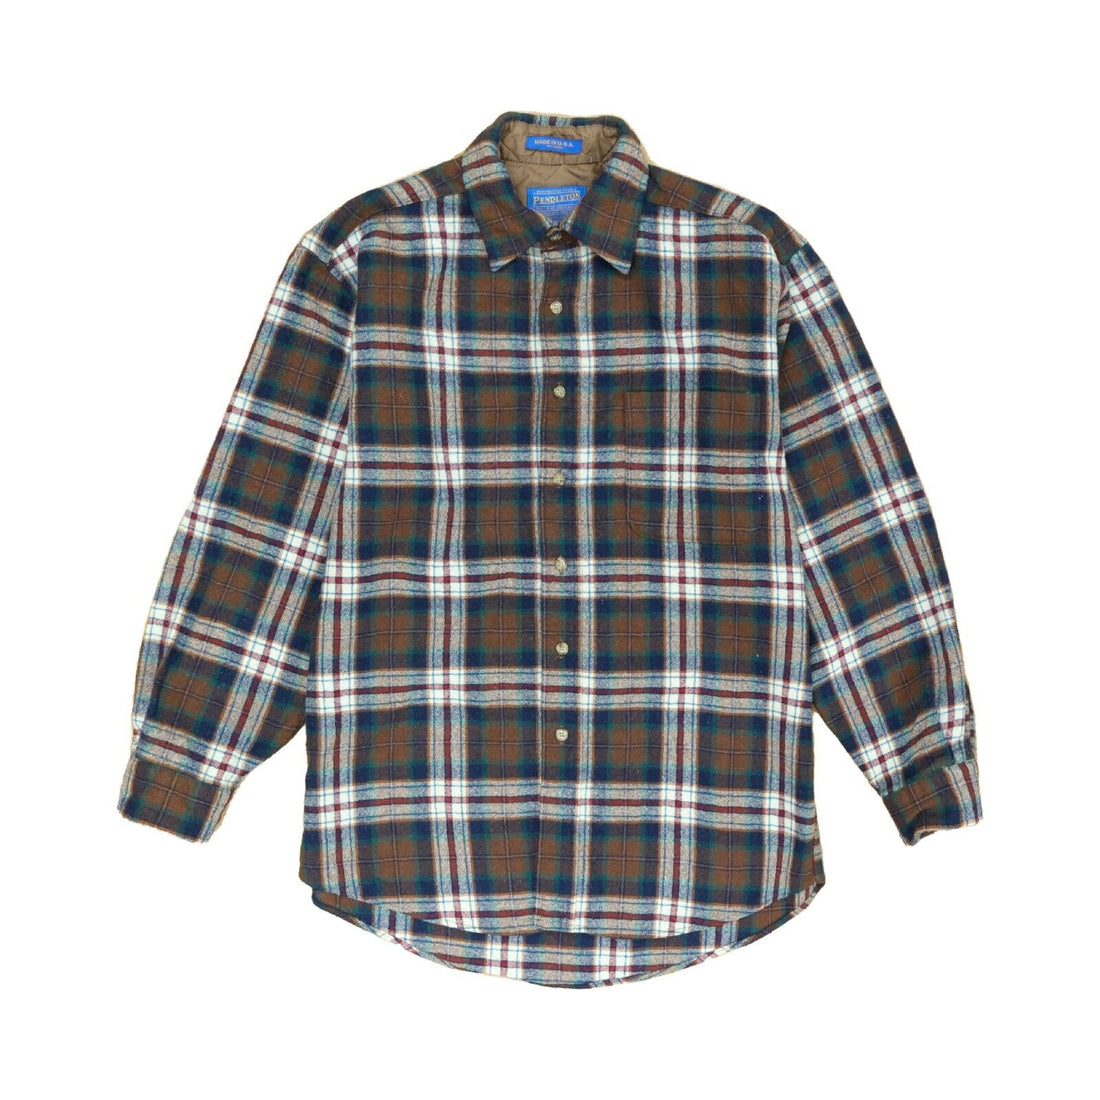 Vintage Pendleton Wool Lodge Button Up Shirt Size Medium Brown Tartan Plaid